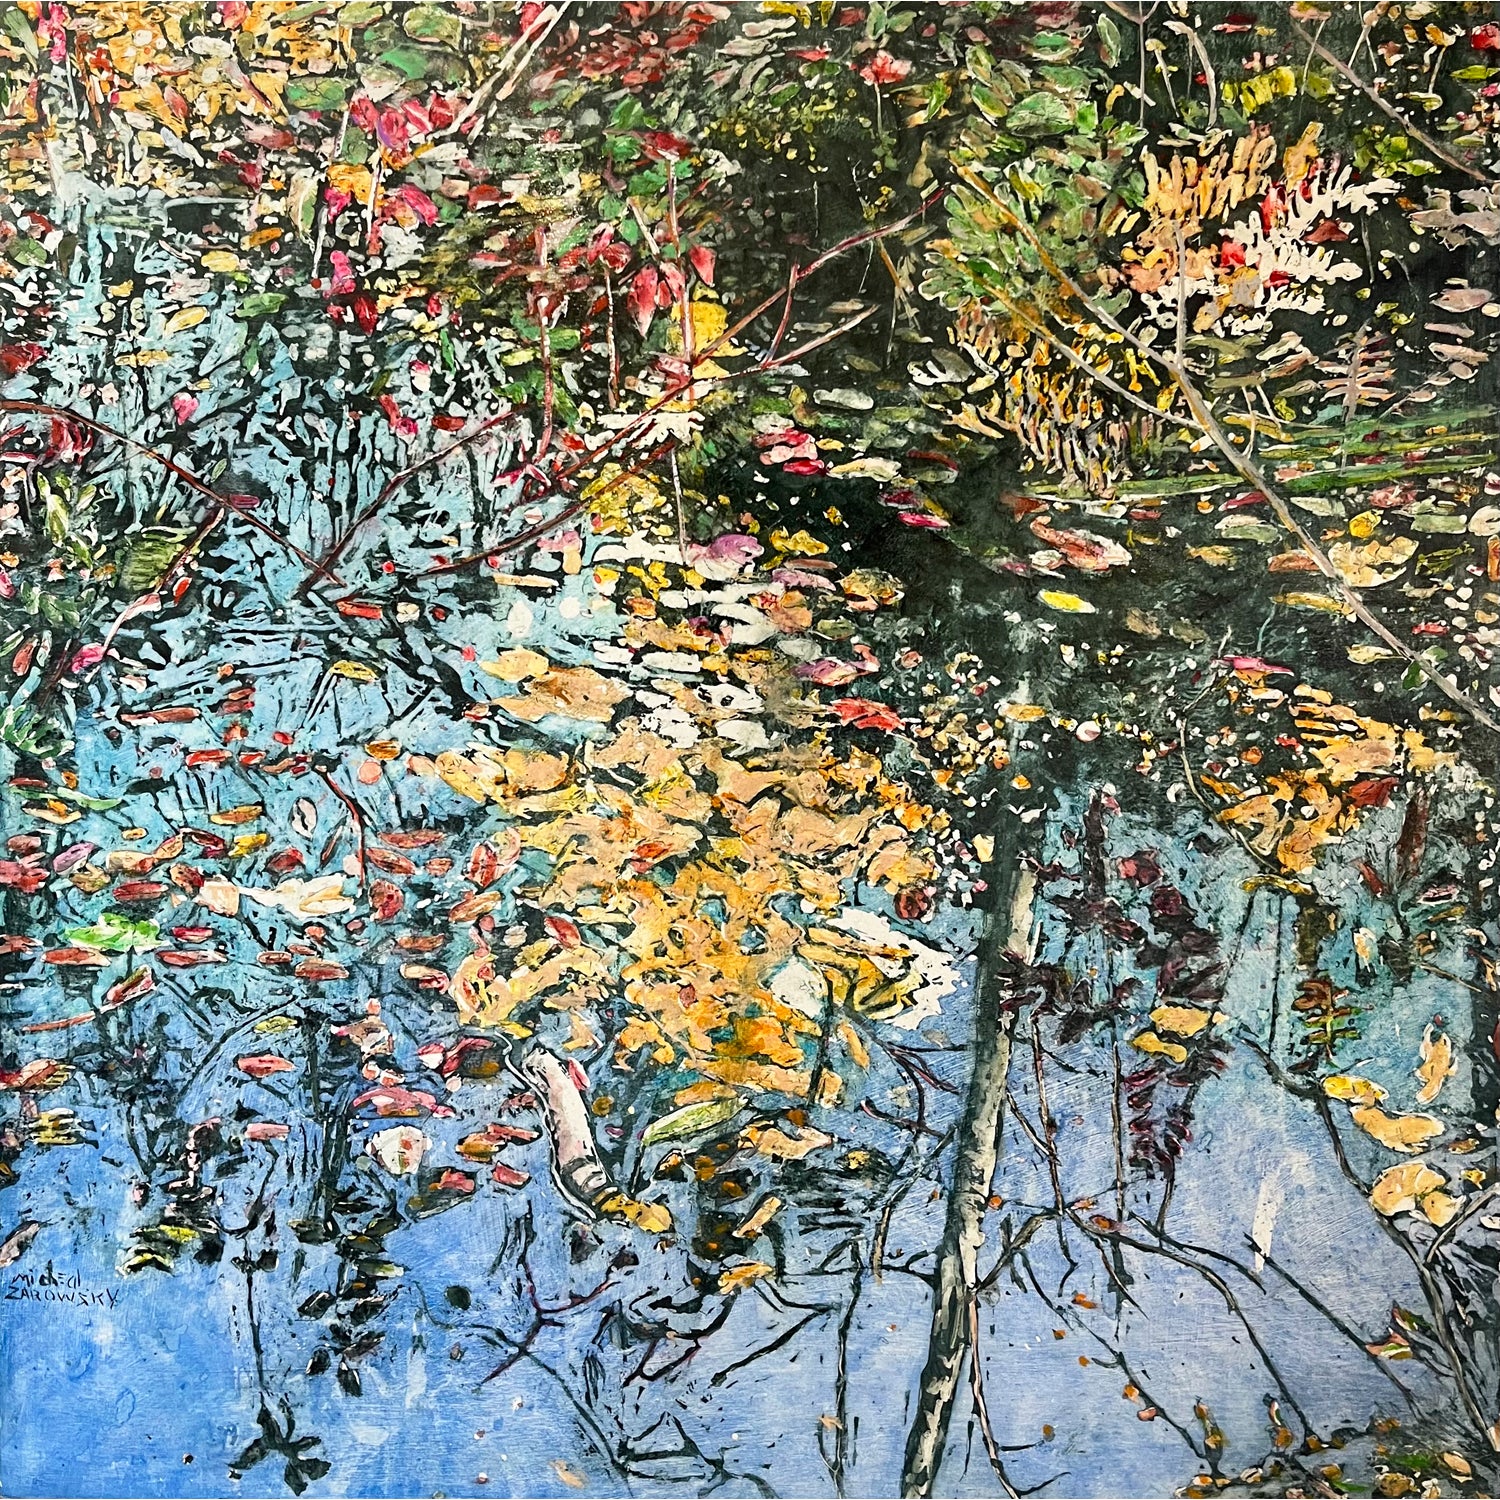 Micheal Zarowsky - Sun Reflection, 30" x 30"